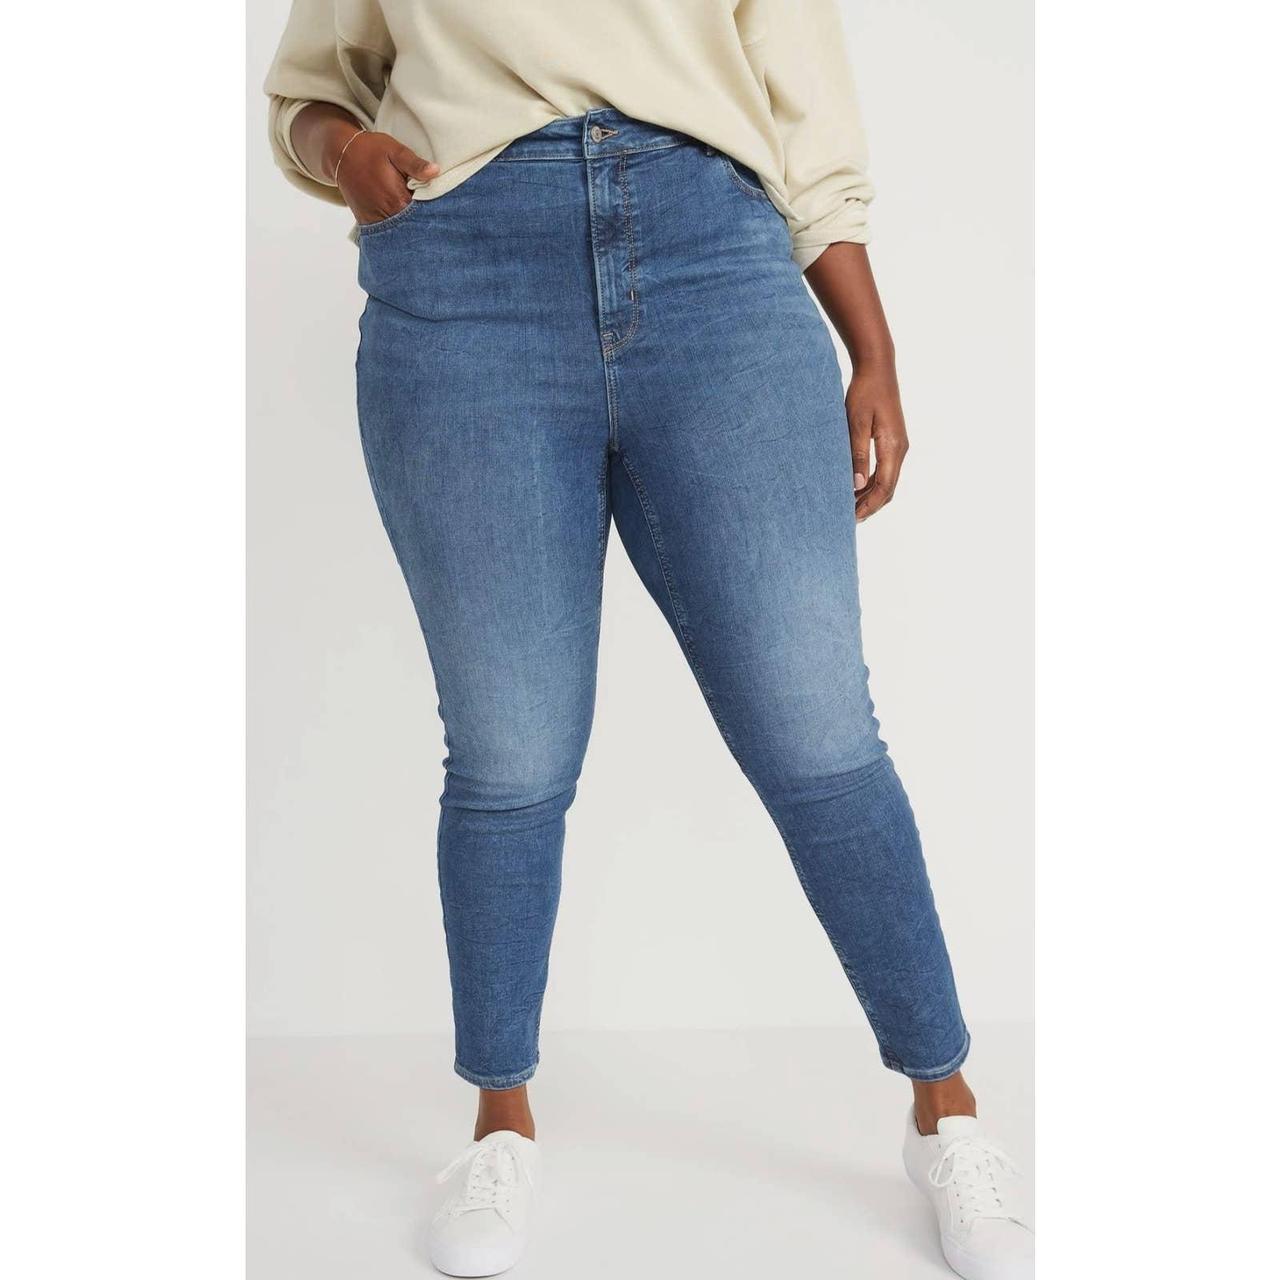 High-Waisted Secret-Slim Pockets Rockstar Super Skinny Plus-Size Jeans